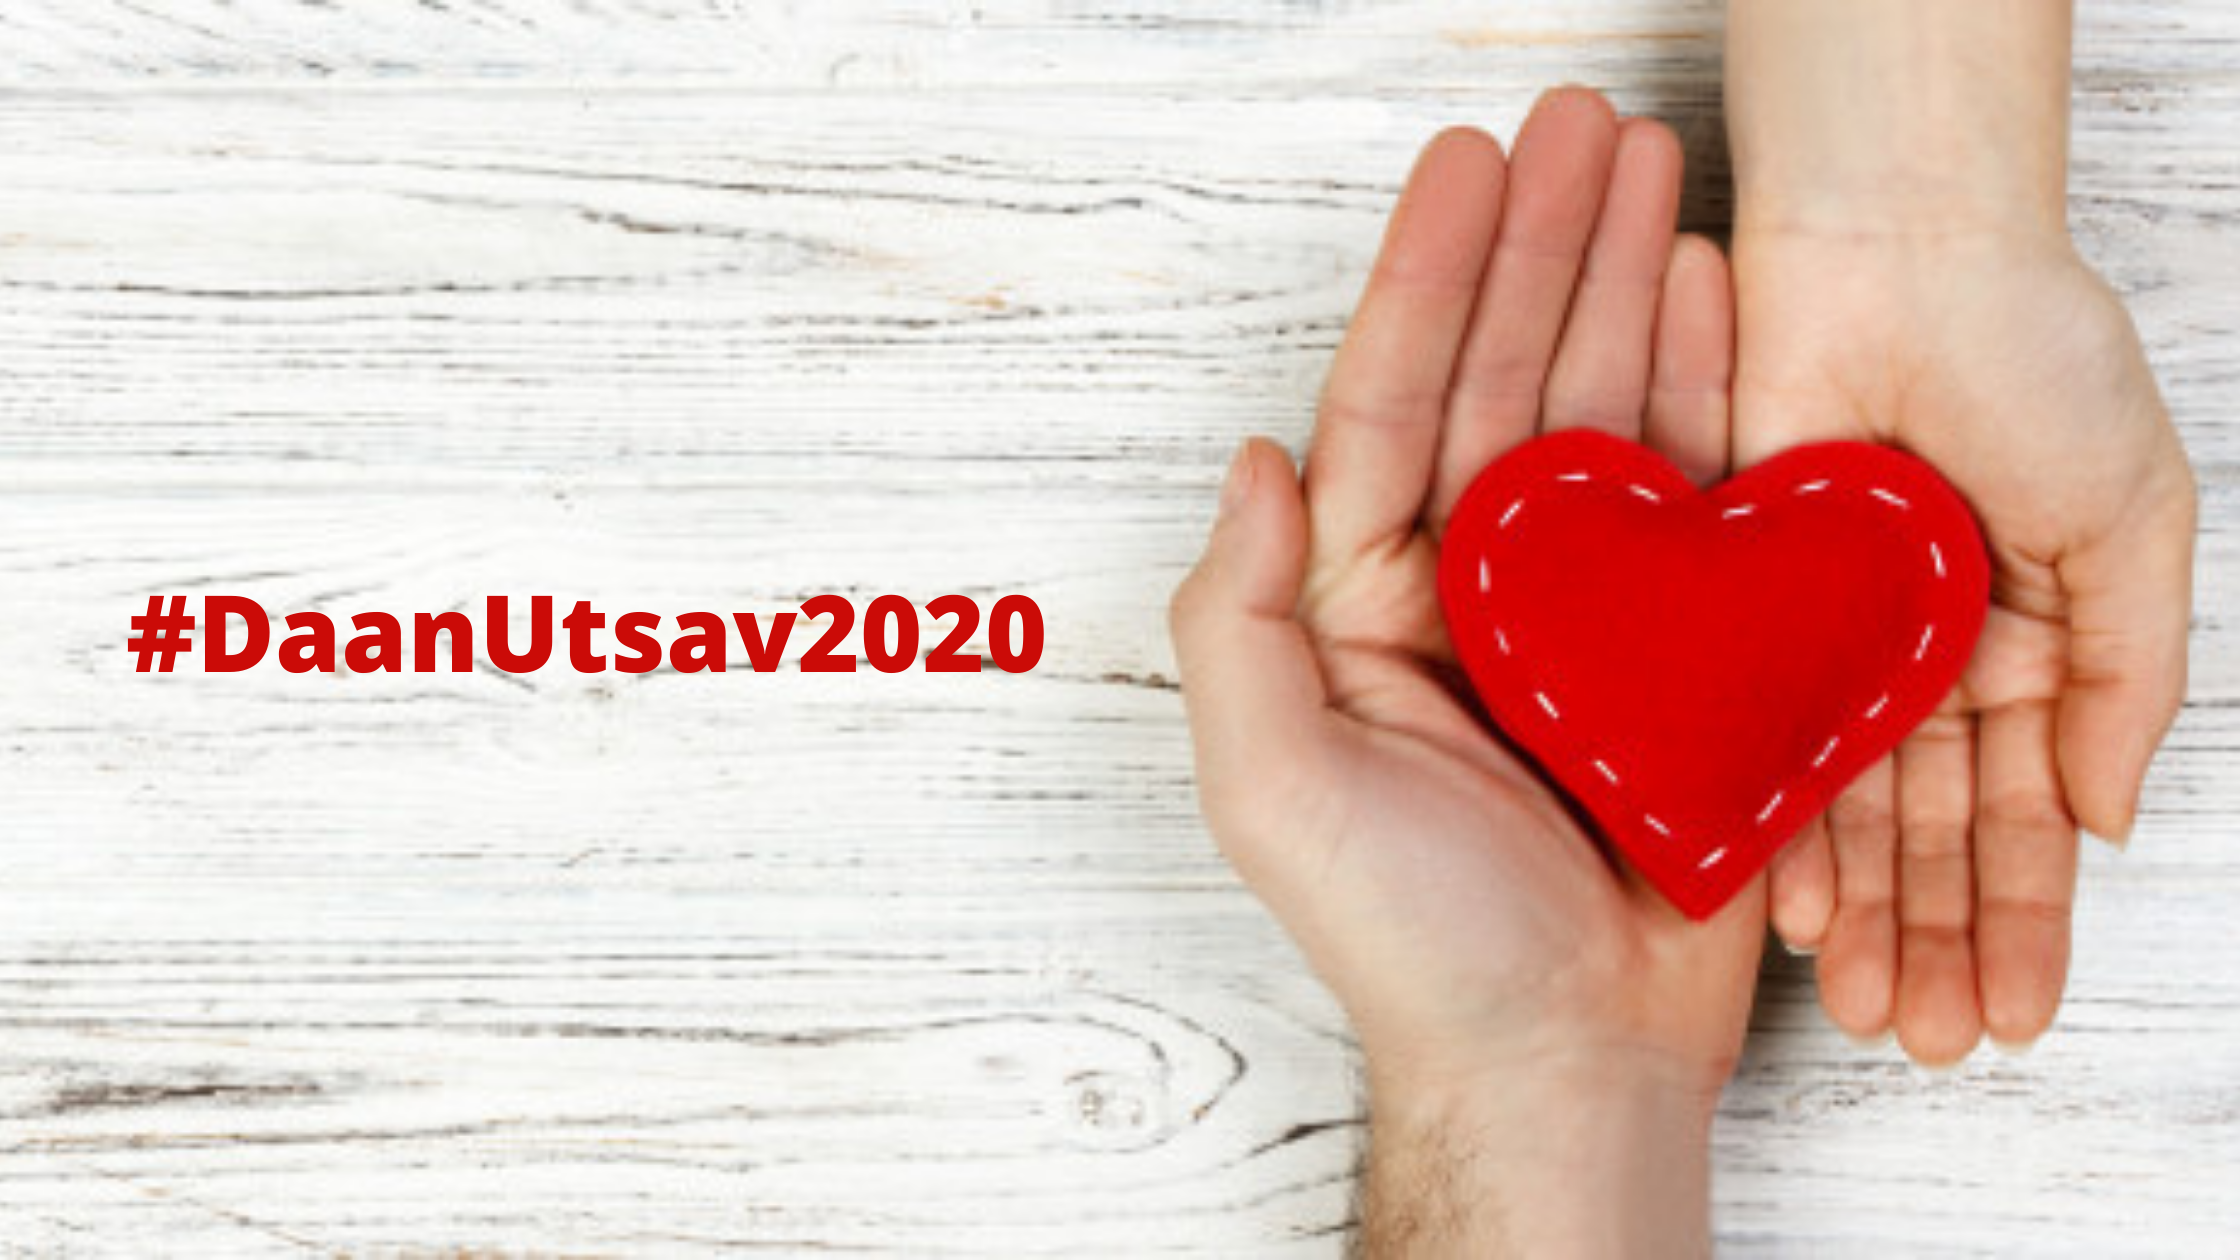 Daan Utsav 2020- The Joy Of Giving Week Could Be More Joyful